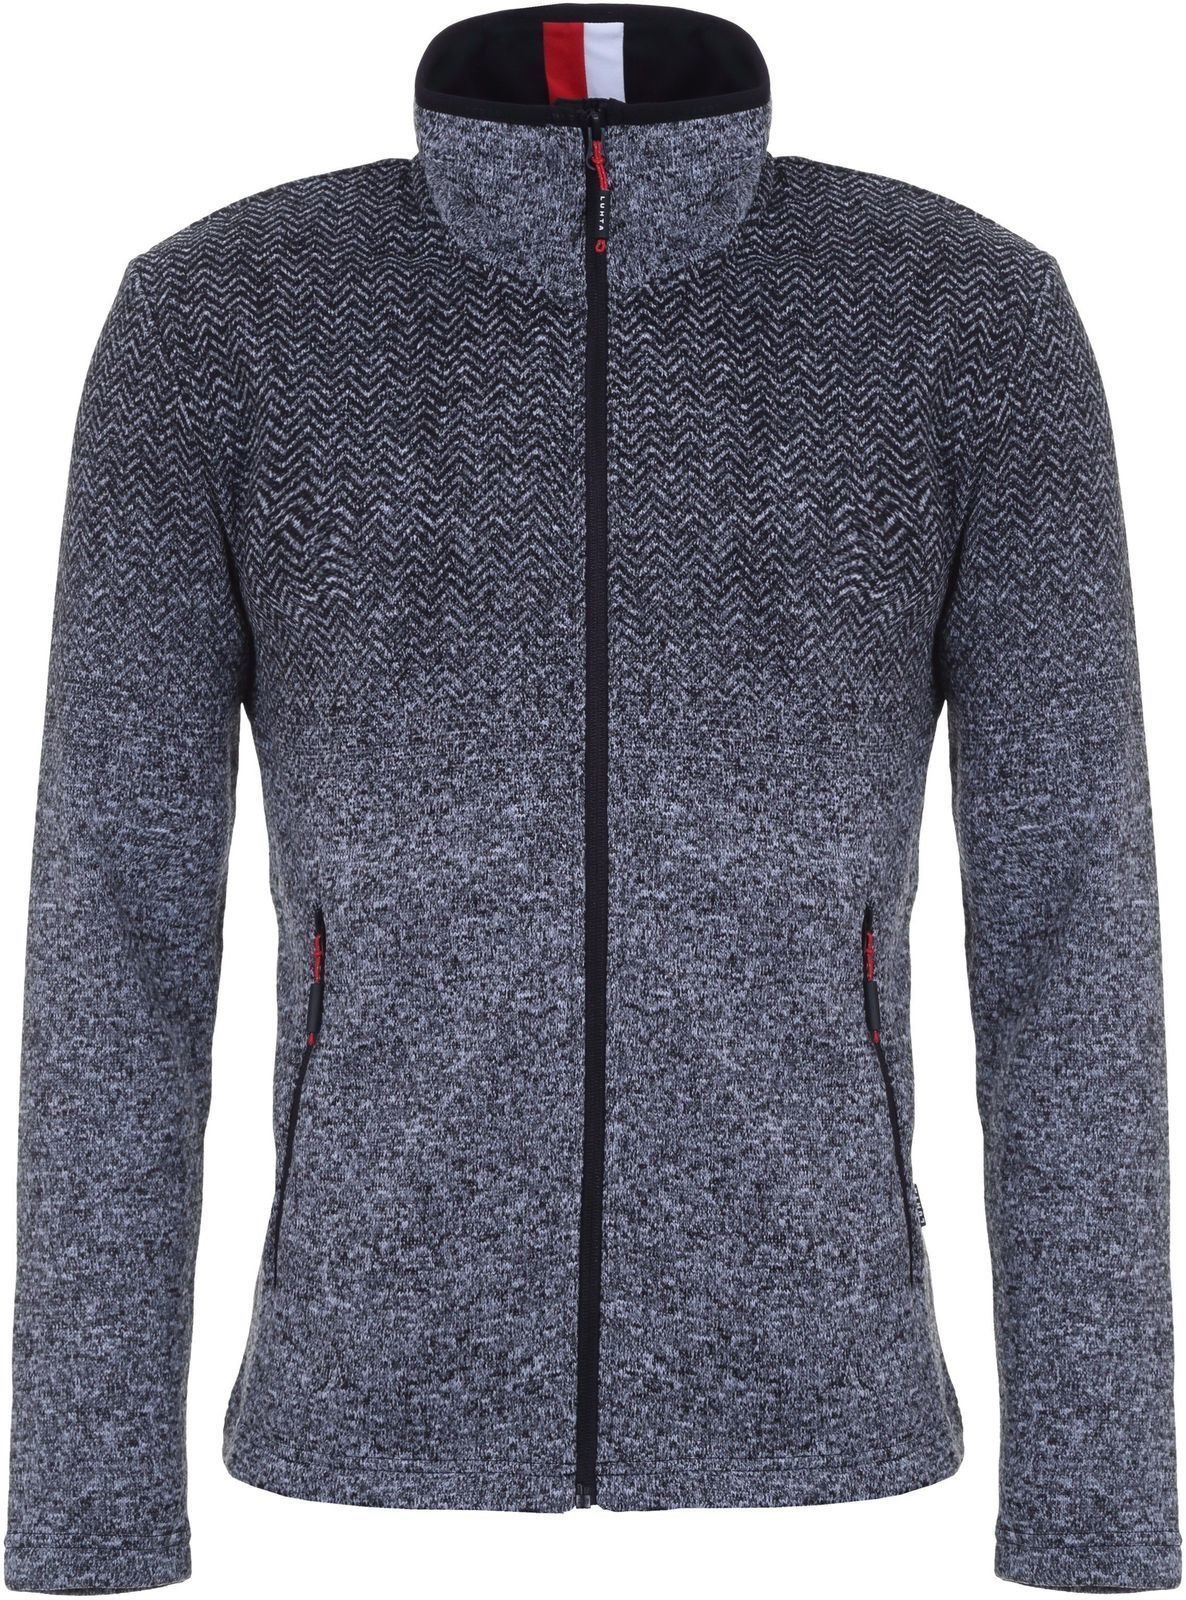 Φούτερ και Μπλούζα Σκι Luhta Kaivola Mens Sweater Lead Grey XL Αλτης